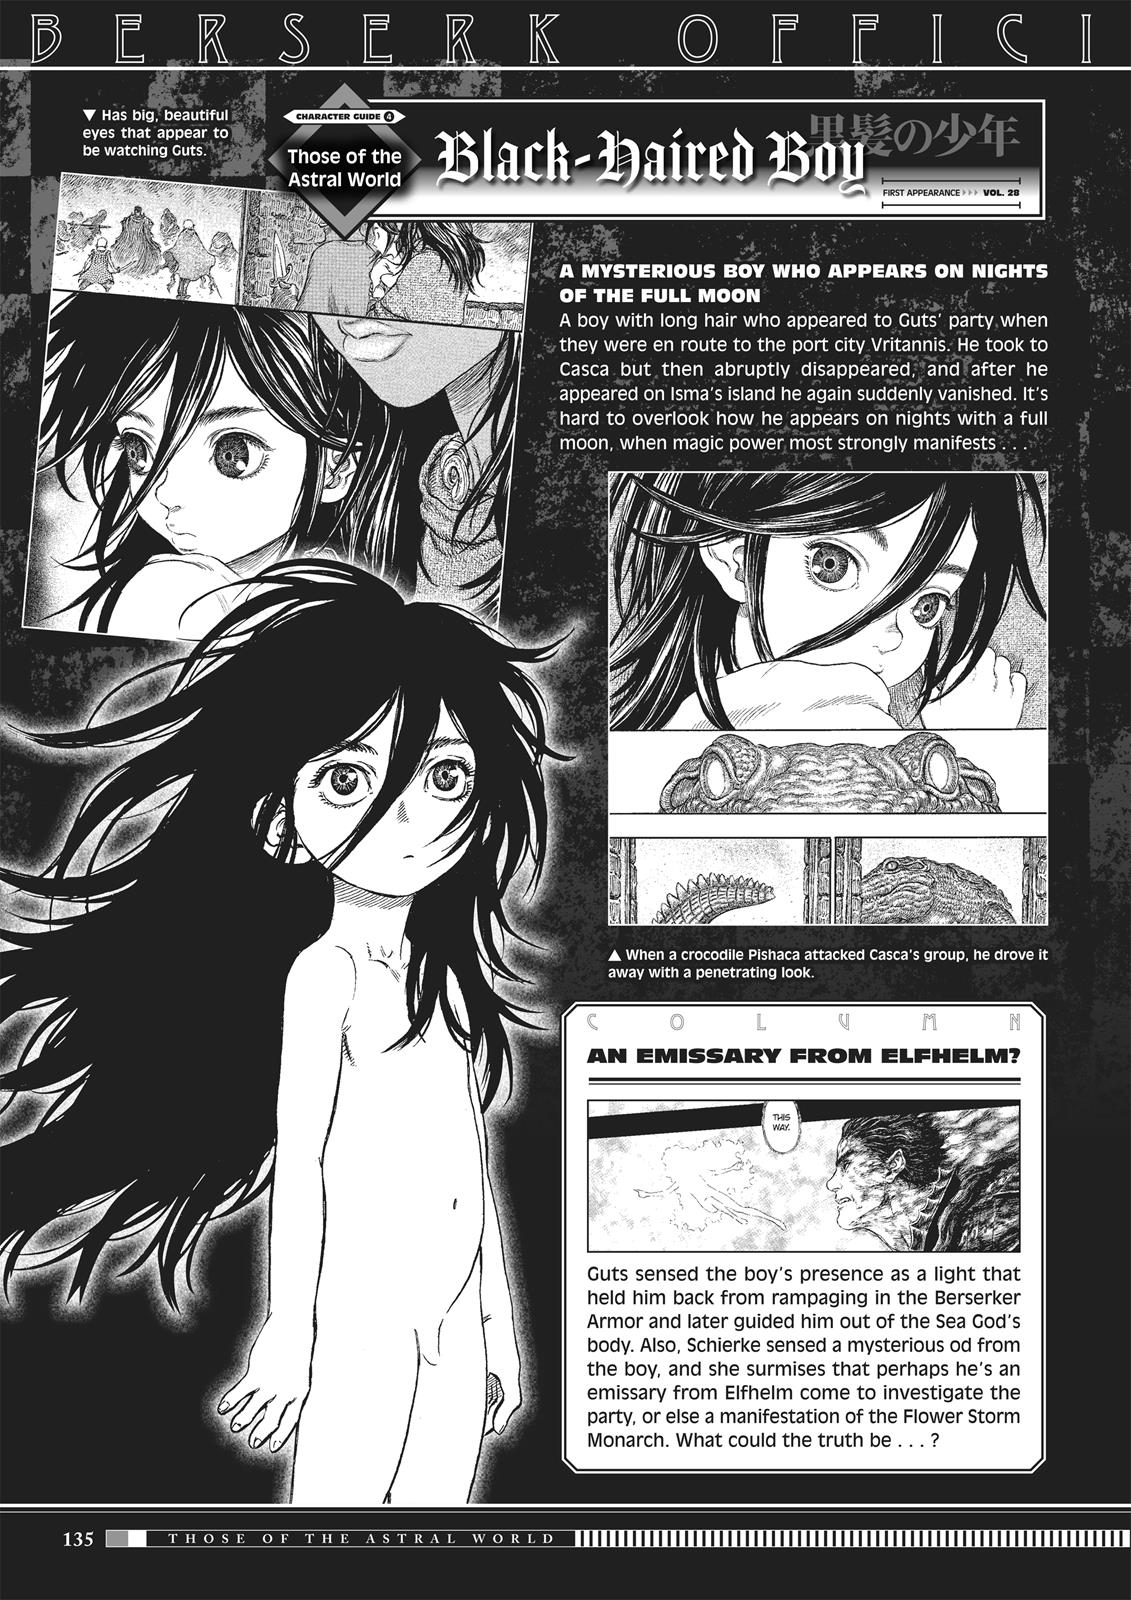 Berserk Manga Chapter 350.5 image 133